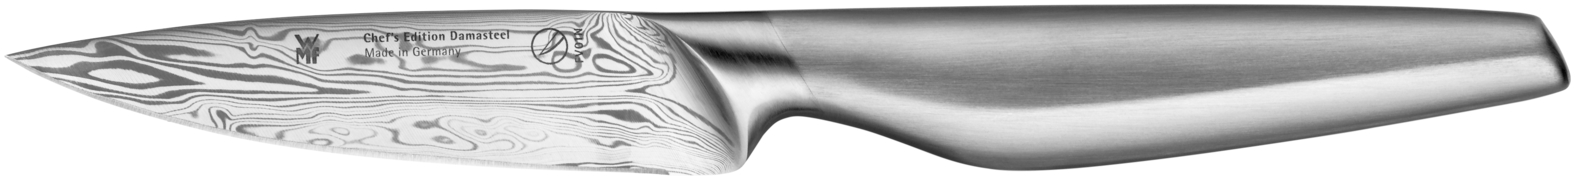 Универсальный нож Chef's Edition Damasteel 10см. шлейф универсальный 24pin шаг 0 5мм длина 20см